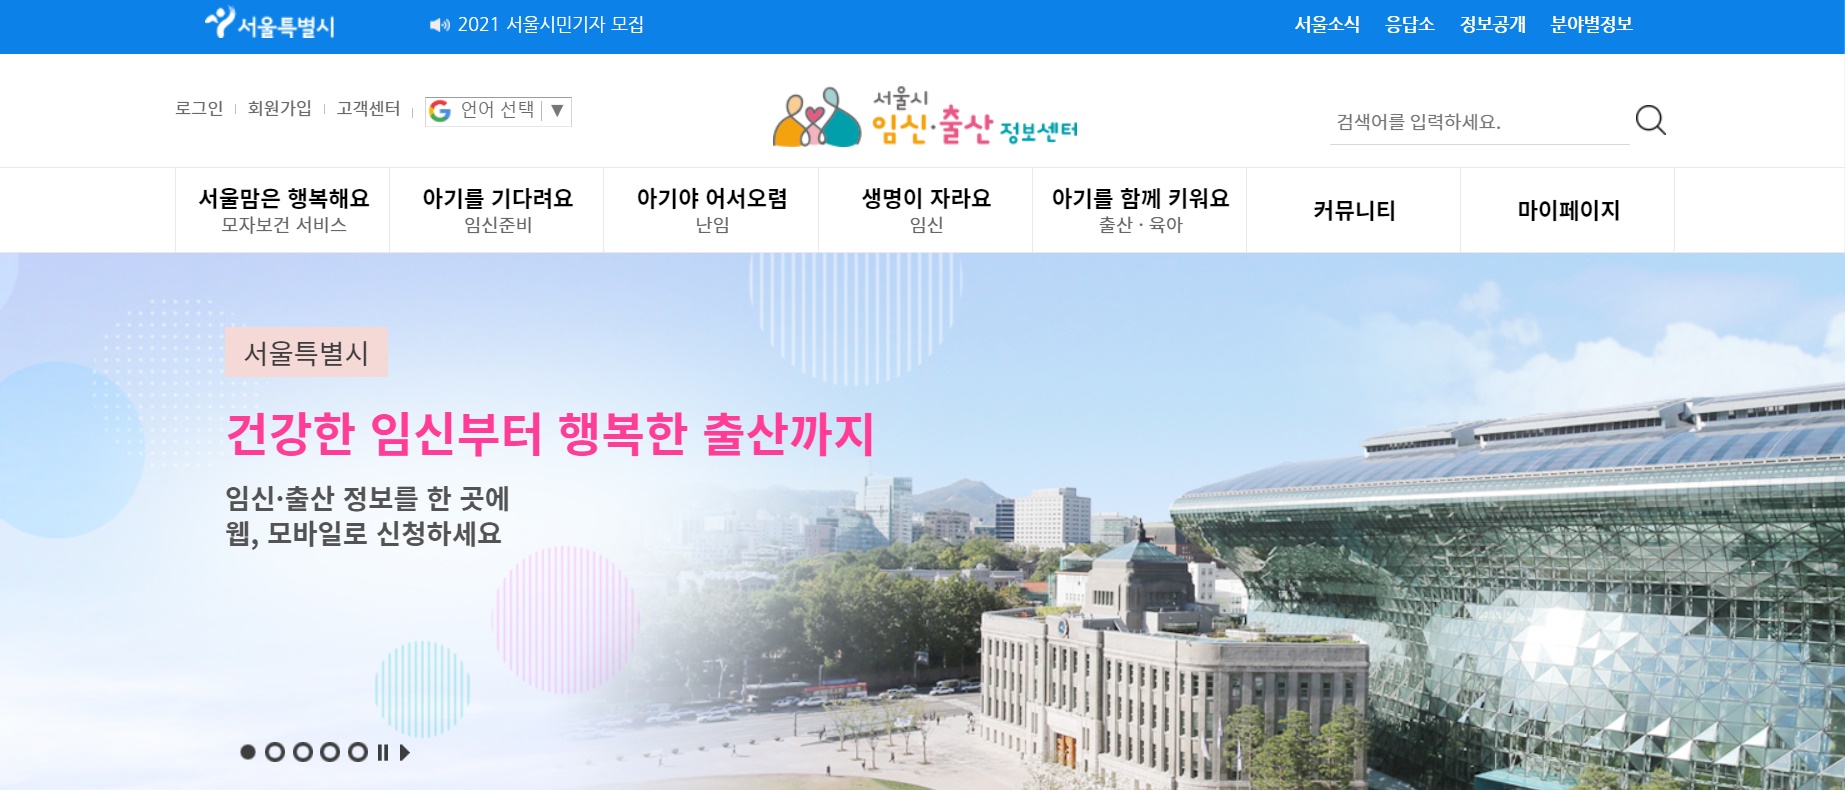 서울시가 운영하는 임신·출산 정보센터 홈페이지.